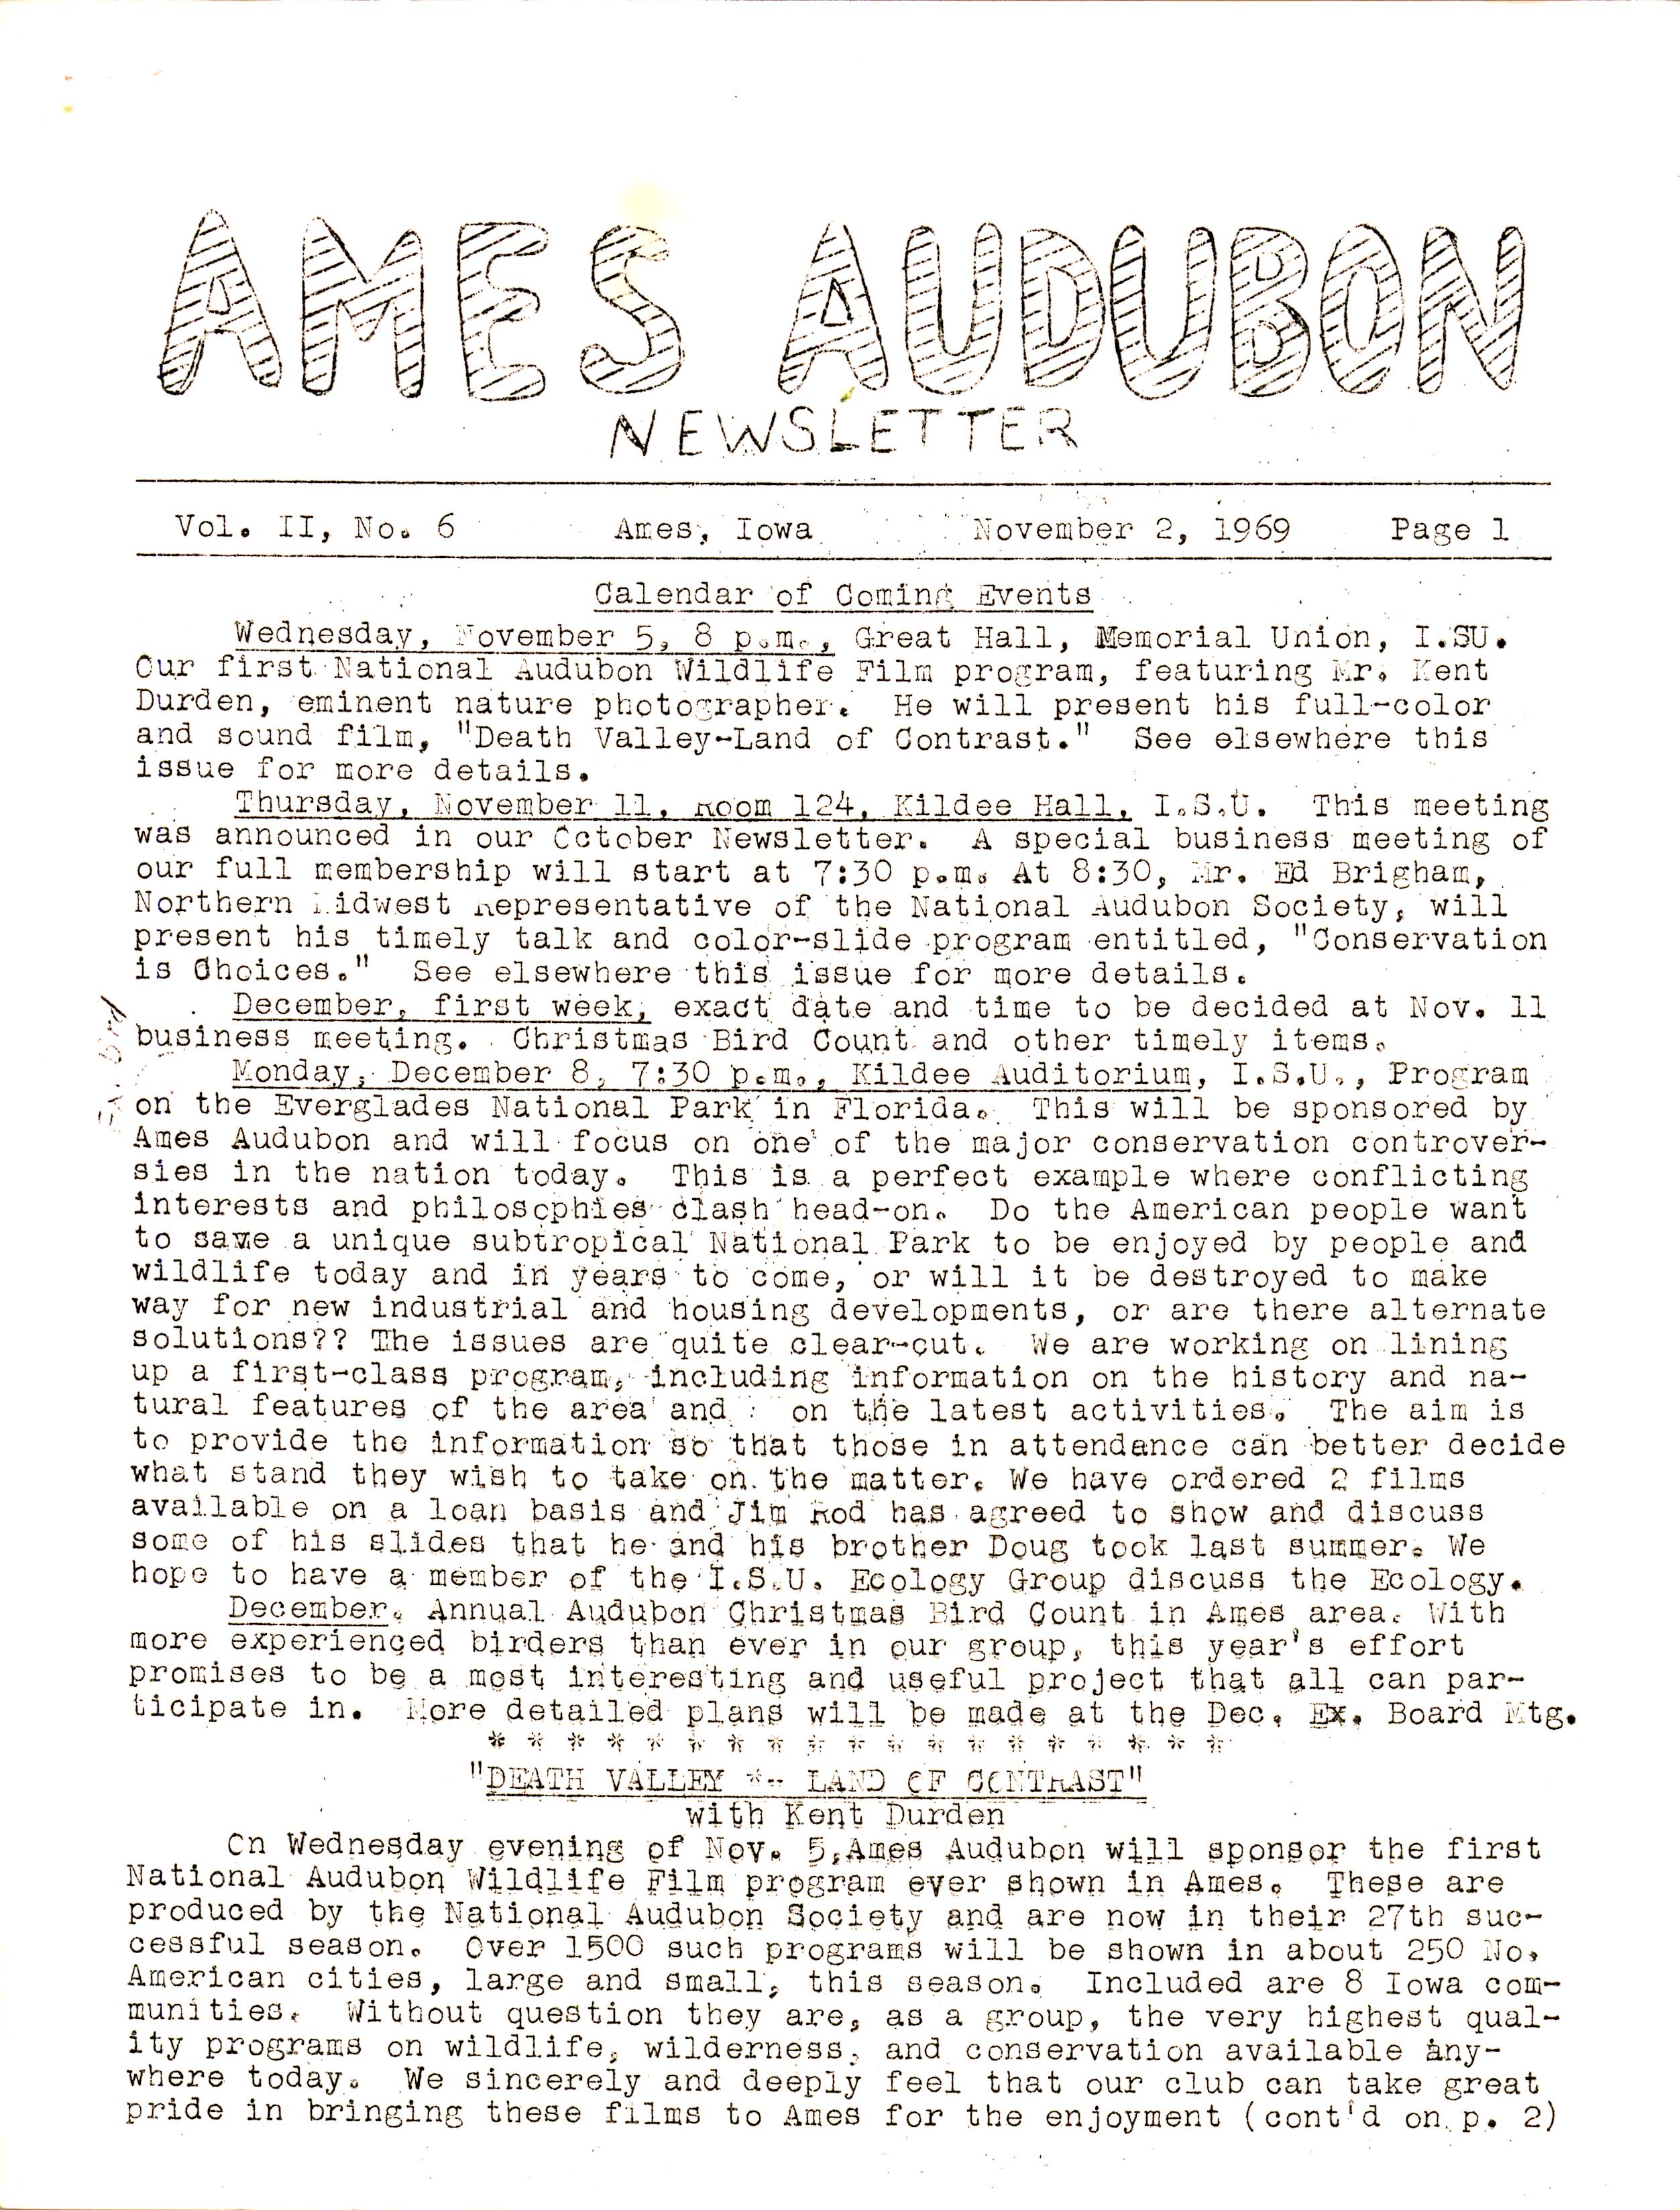 Ames Audubon Newsletter, Volume 2, Number 6, November 2, 1969